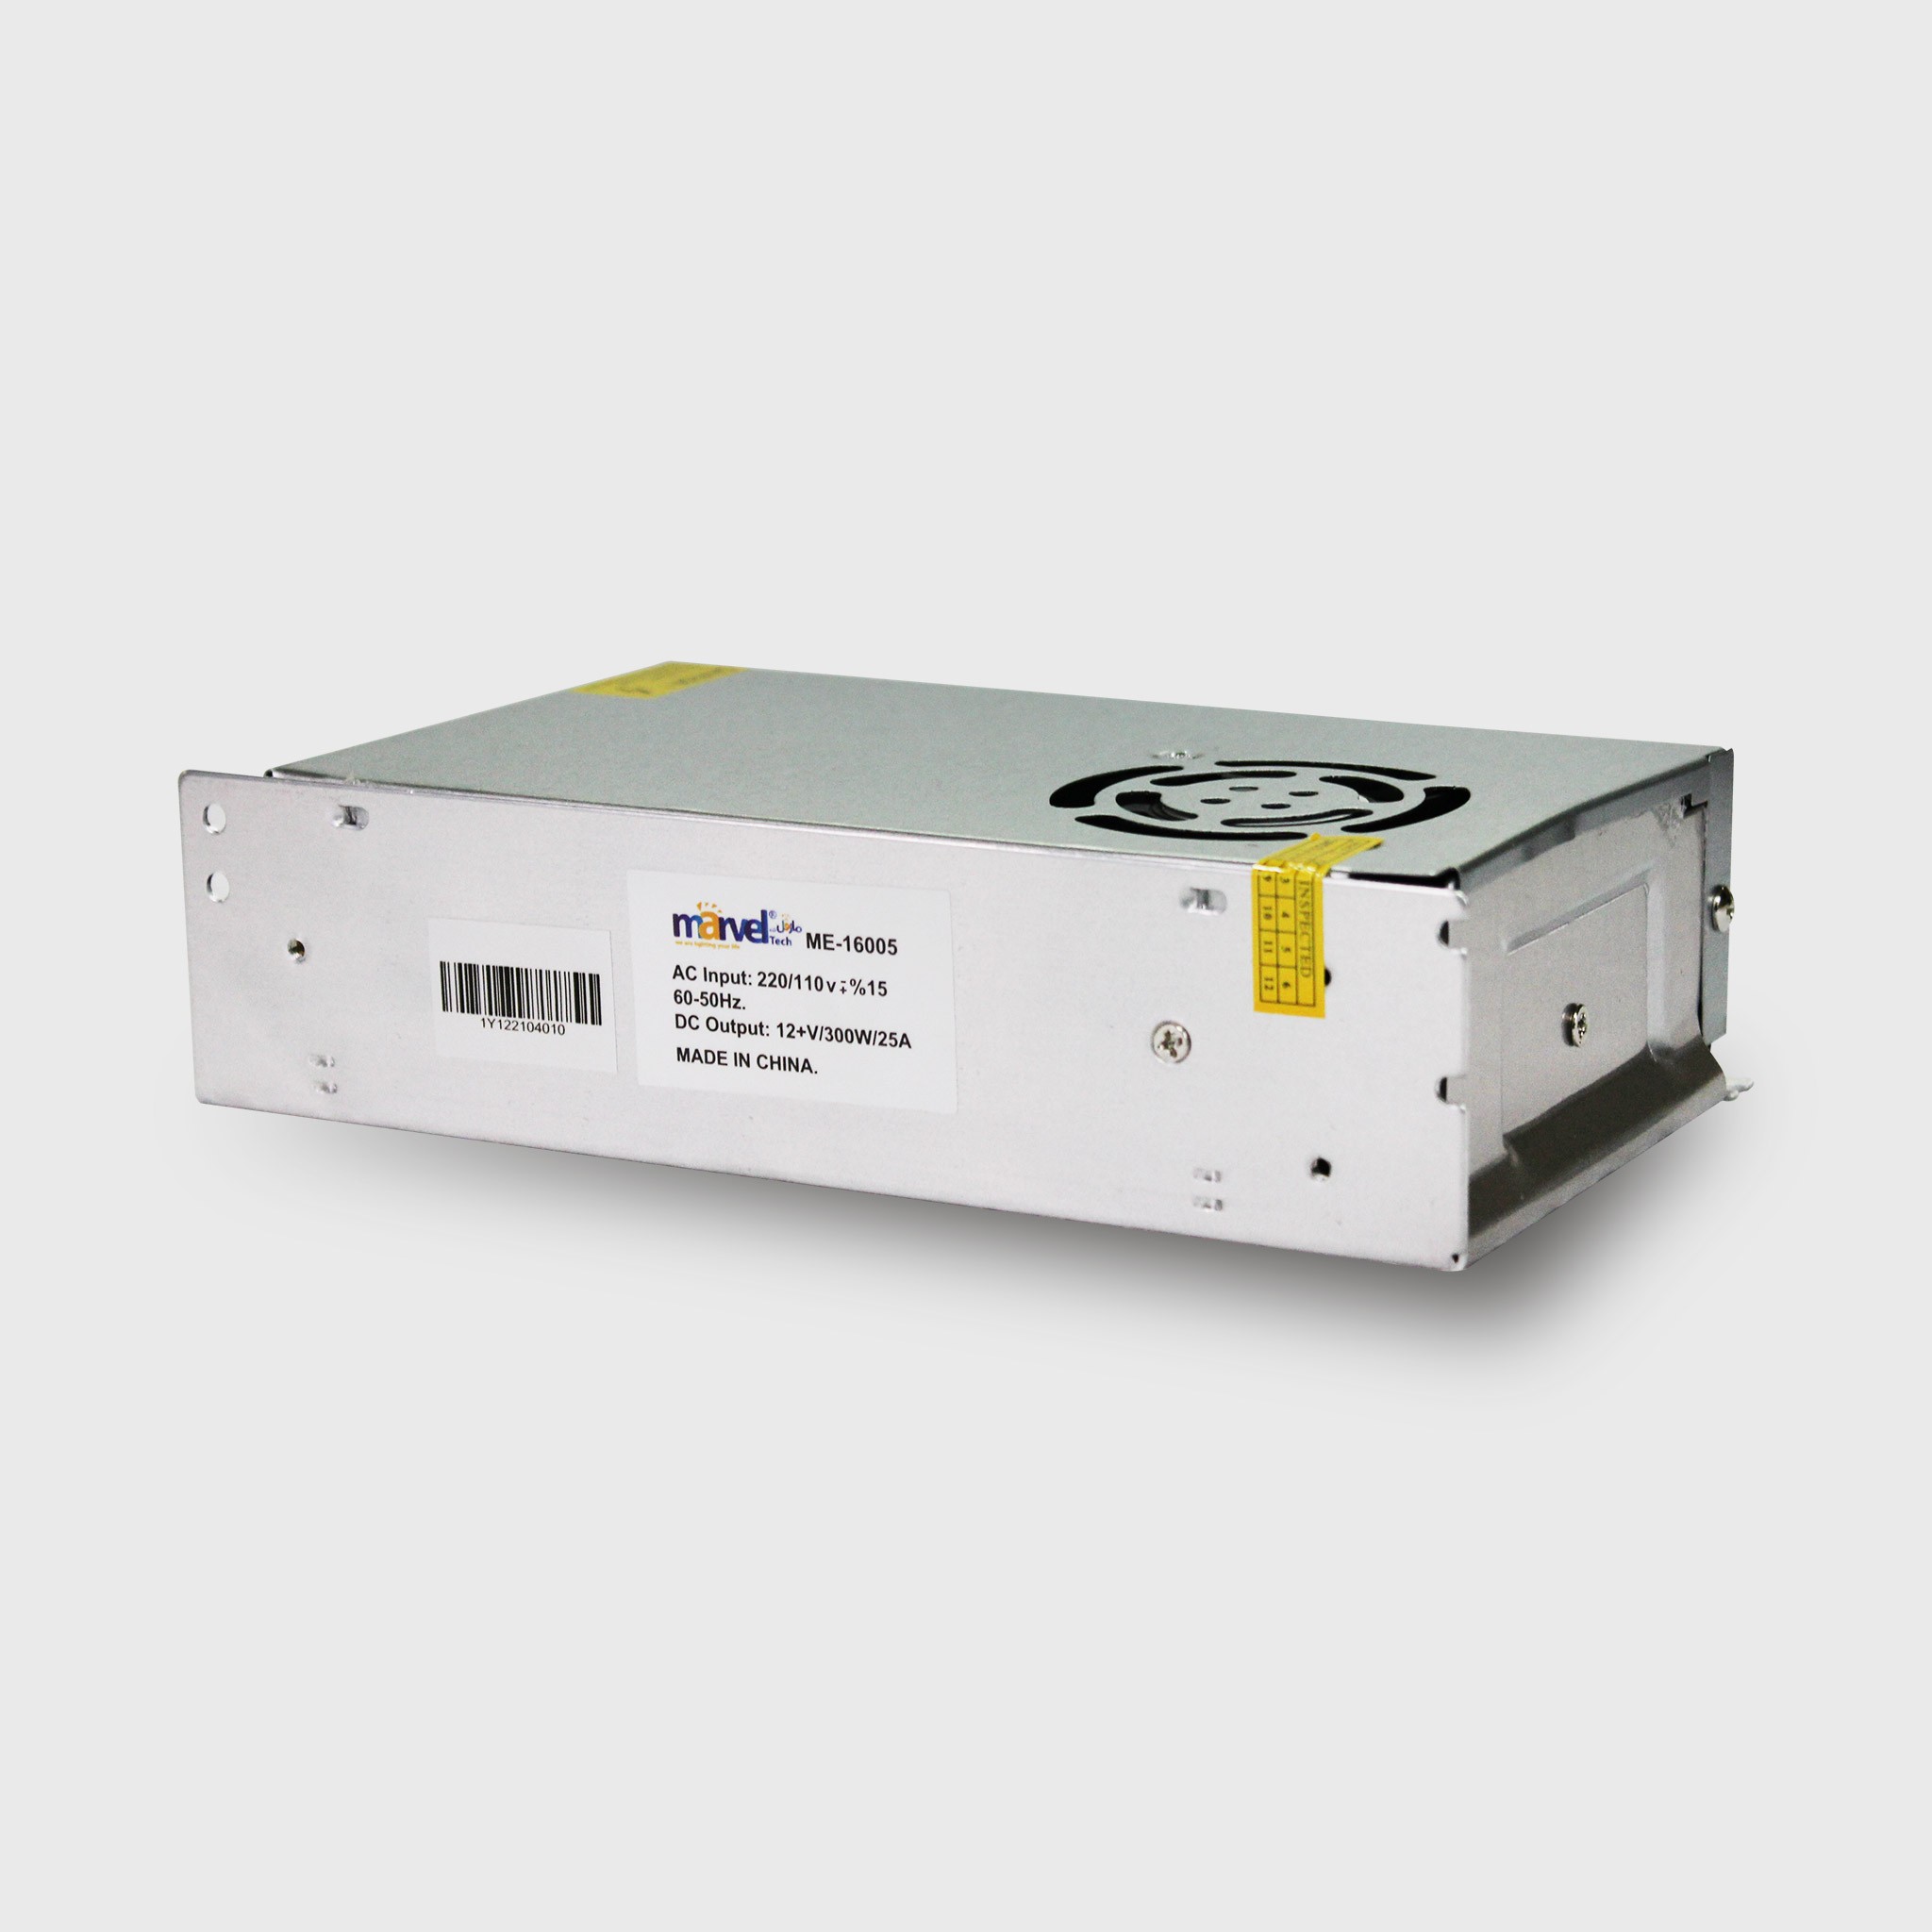 ME-16005 Power Supply 12V 300W/25A